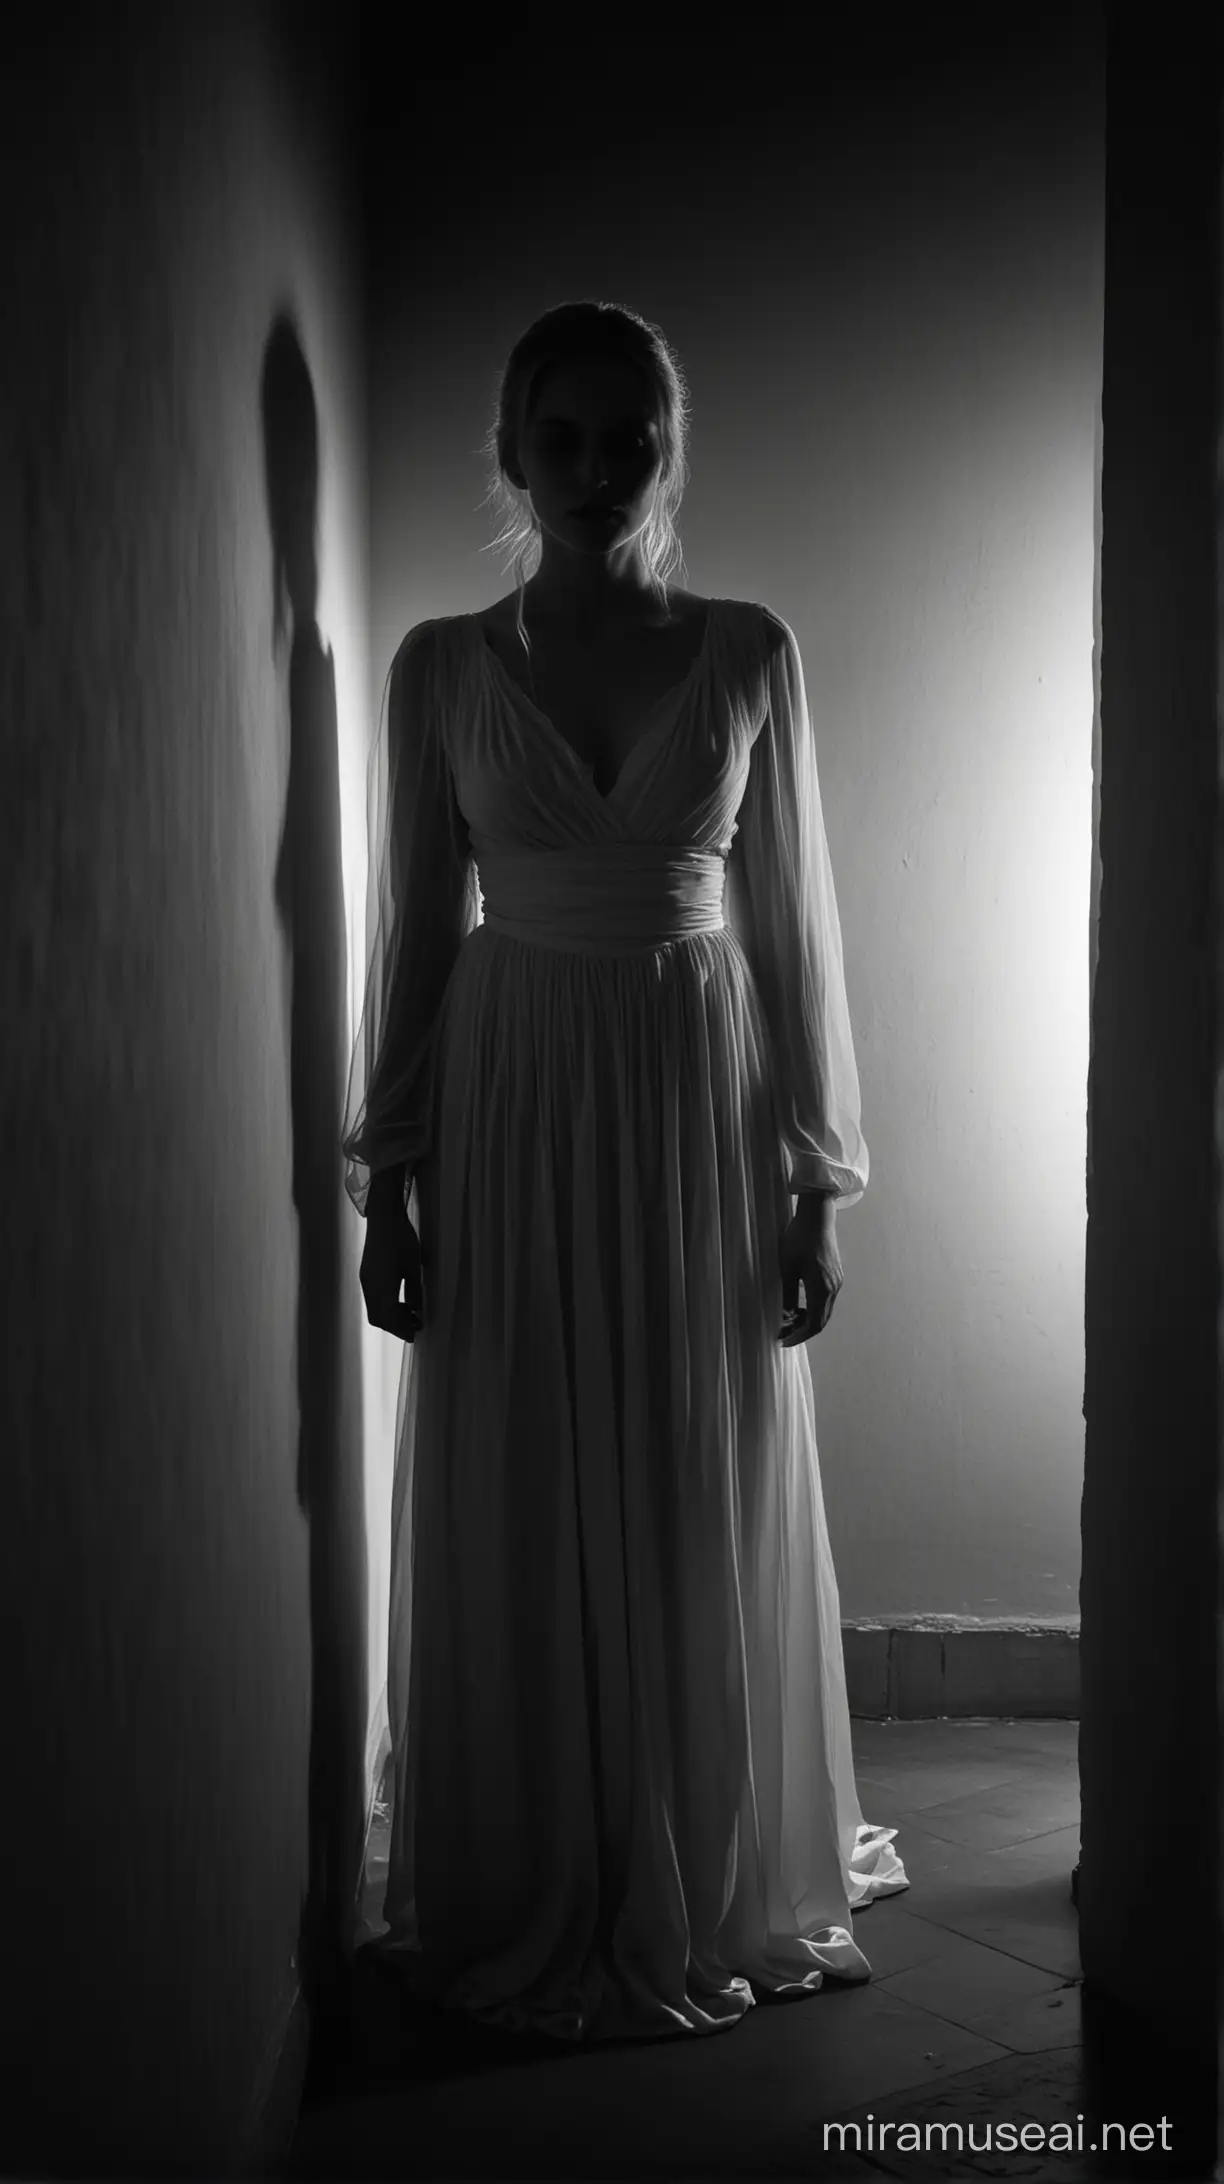 silueta de un espectro de una mujer vestida de blanco con rostro palido, en un rincon de una habitación oscura en la noche